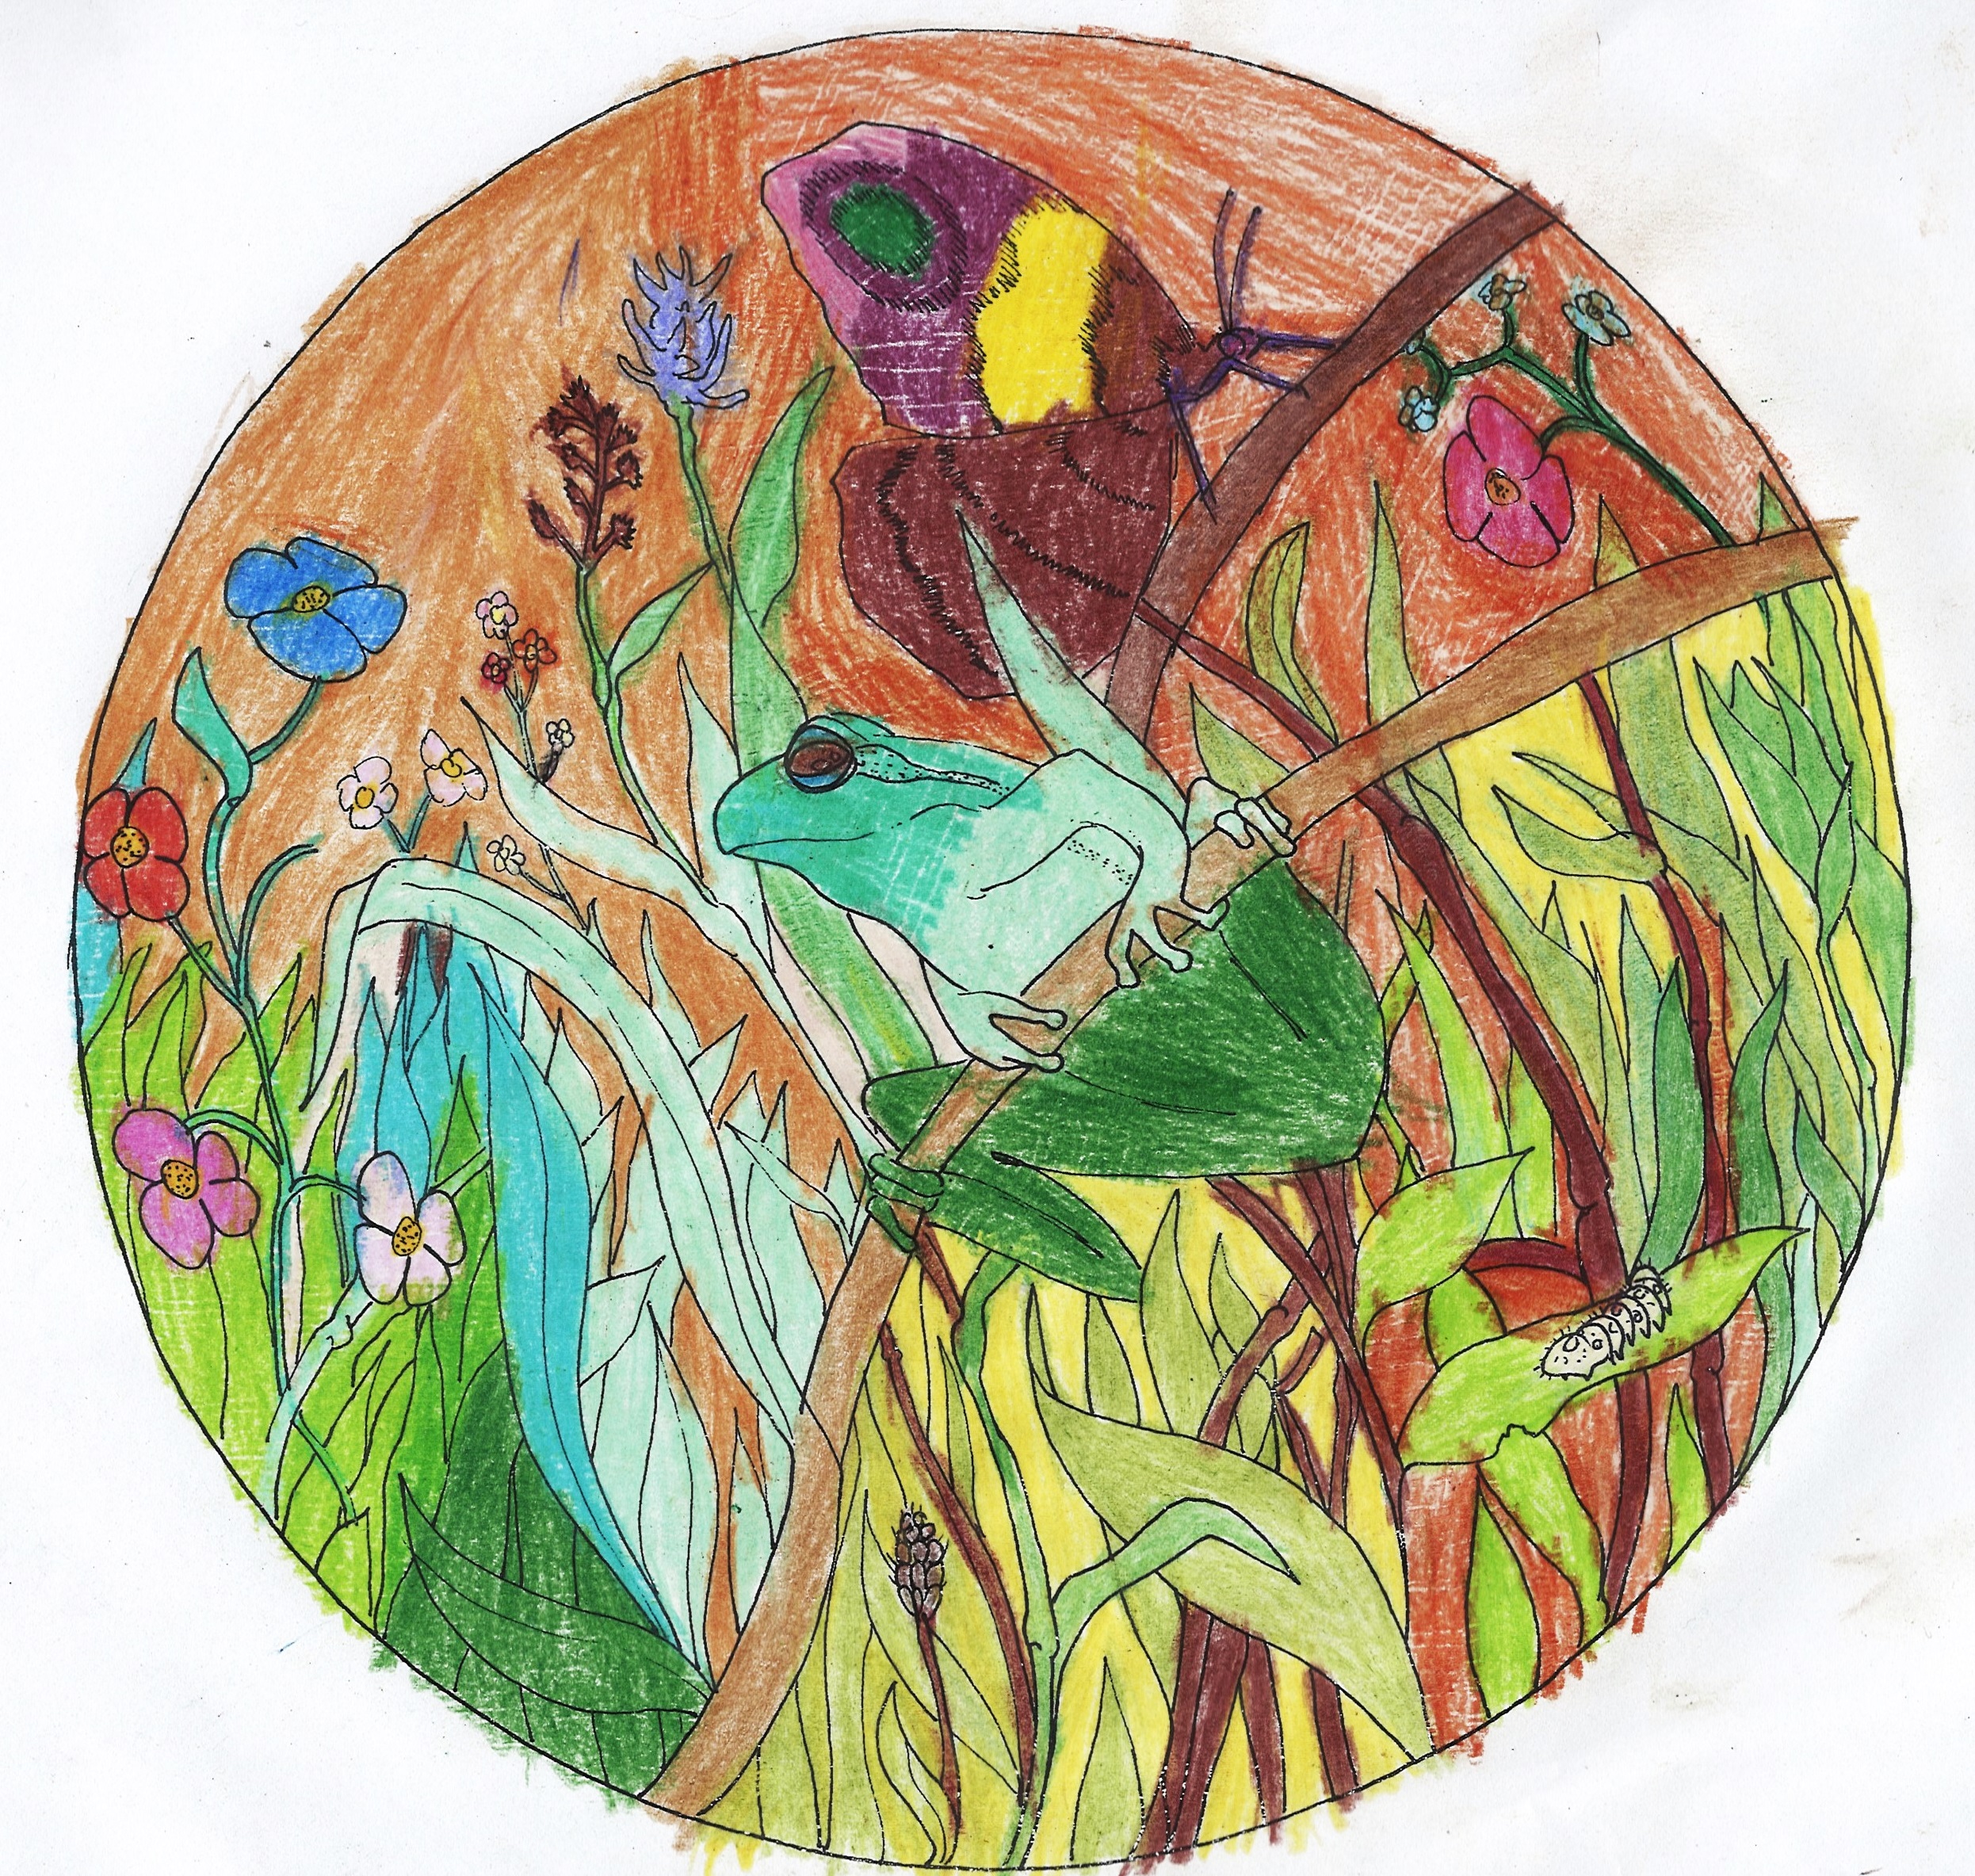 Praca w formie kolorowanki, okrągła w kształcie. W okręgu, na głównym planie przedstawiona zielona żaba siedząca na gałązce. Powyżej, siedzący na innej gałązce motyl ze skrzydłami w kolorach brązowym, fioletowym i żółtym. Poniżej po prawej stronie na liściu narysowana stonoga.  W tle kolorowe kwiaty i zielona trawa. Całość obrazka znajduje się na ciemnopomarańczowym tle. 